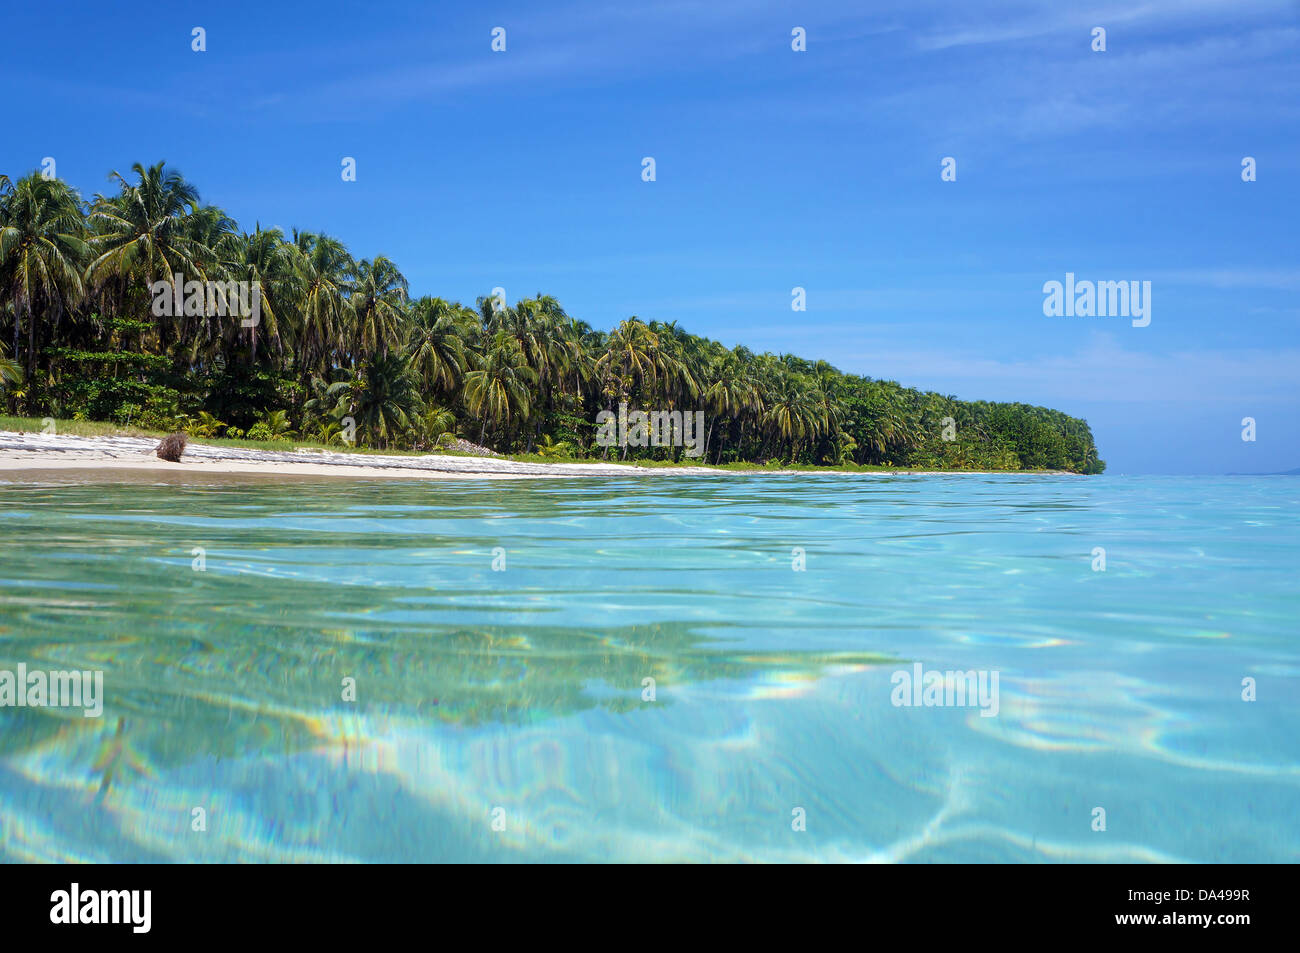 Vista dalla superficie di acqua su un isola tropicale spiaggia con alberi di noce di cocco, Caraibi, Zapatillas isole di Bocas del Toro, Panama Foto Stock